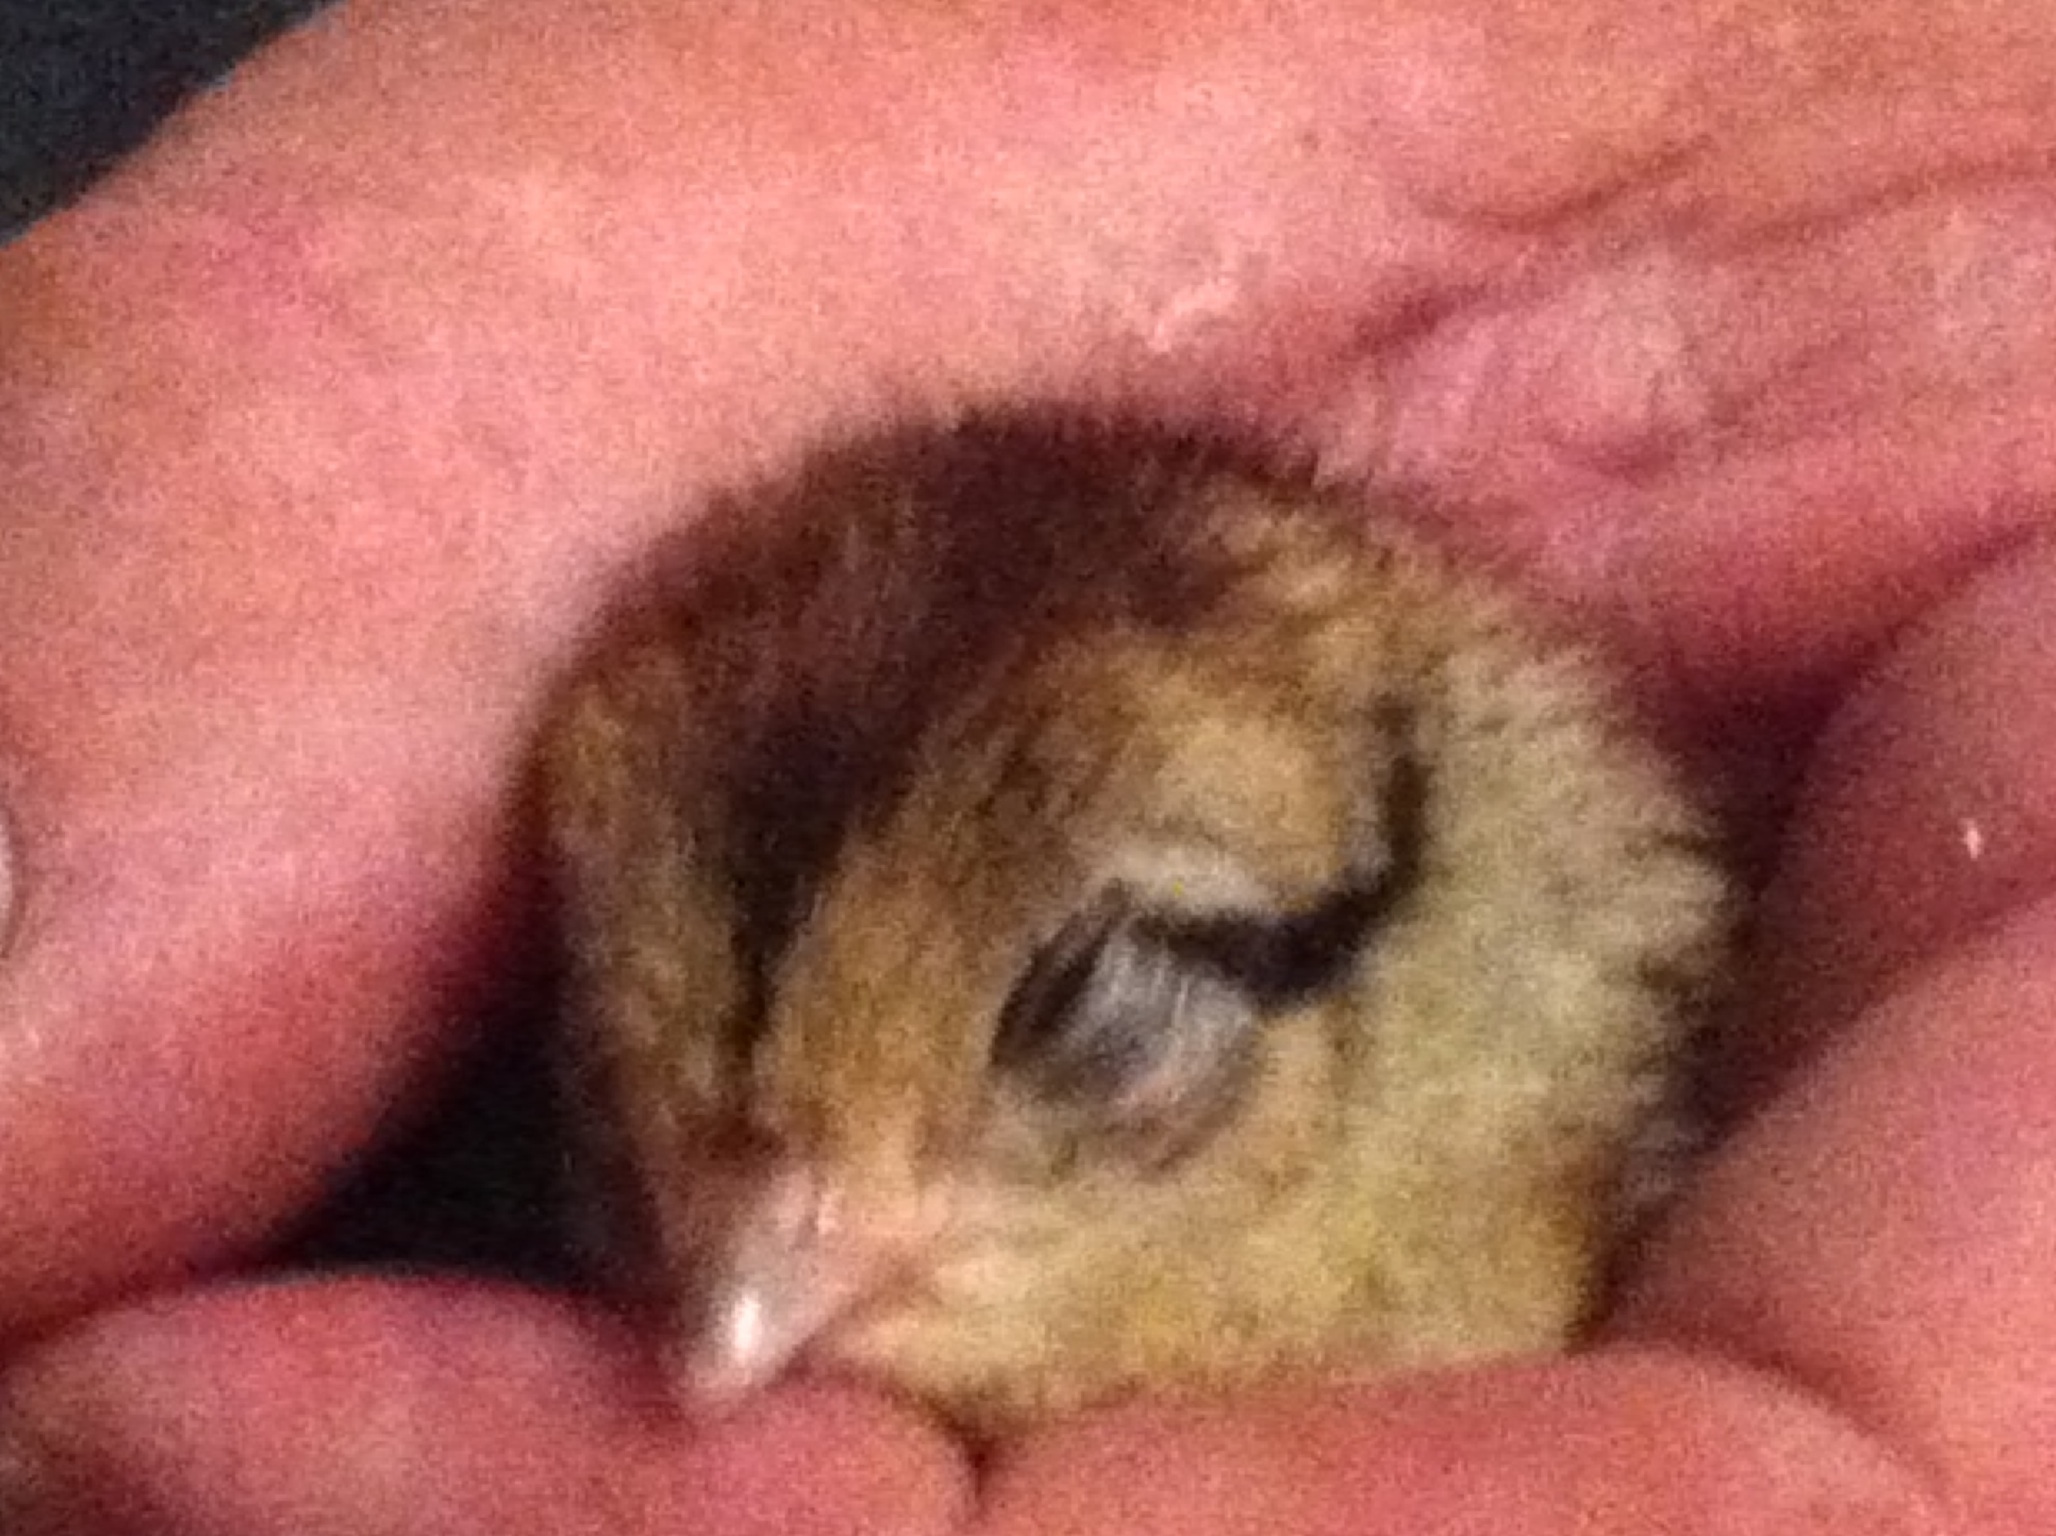 Pheasant chick